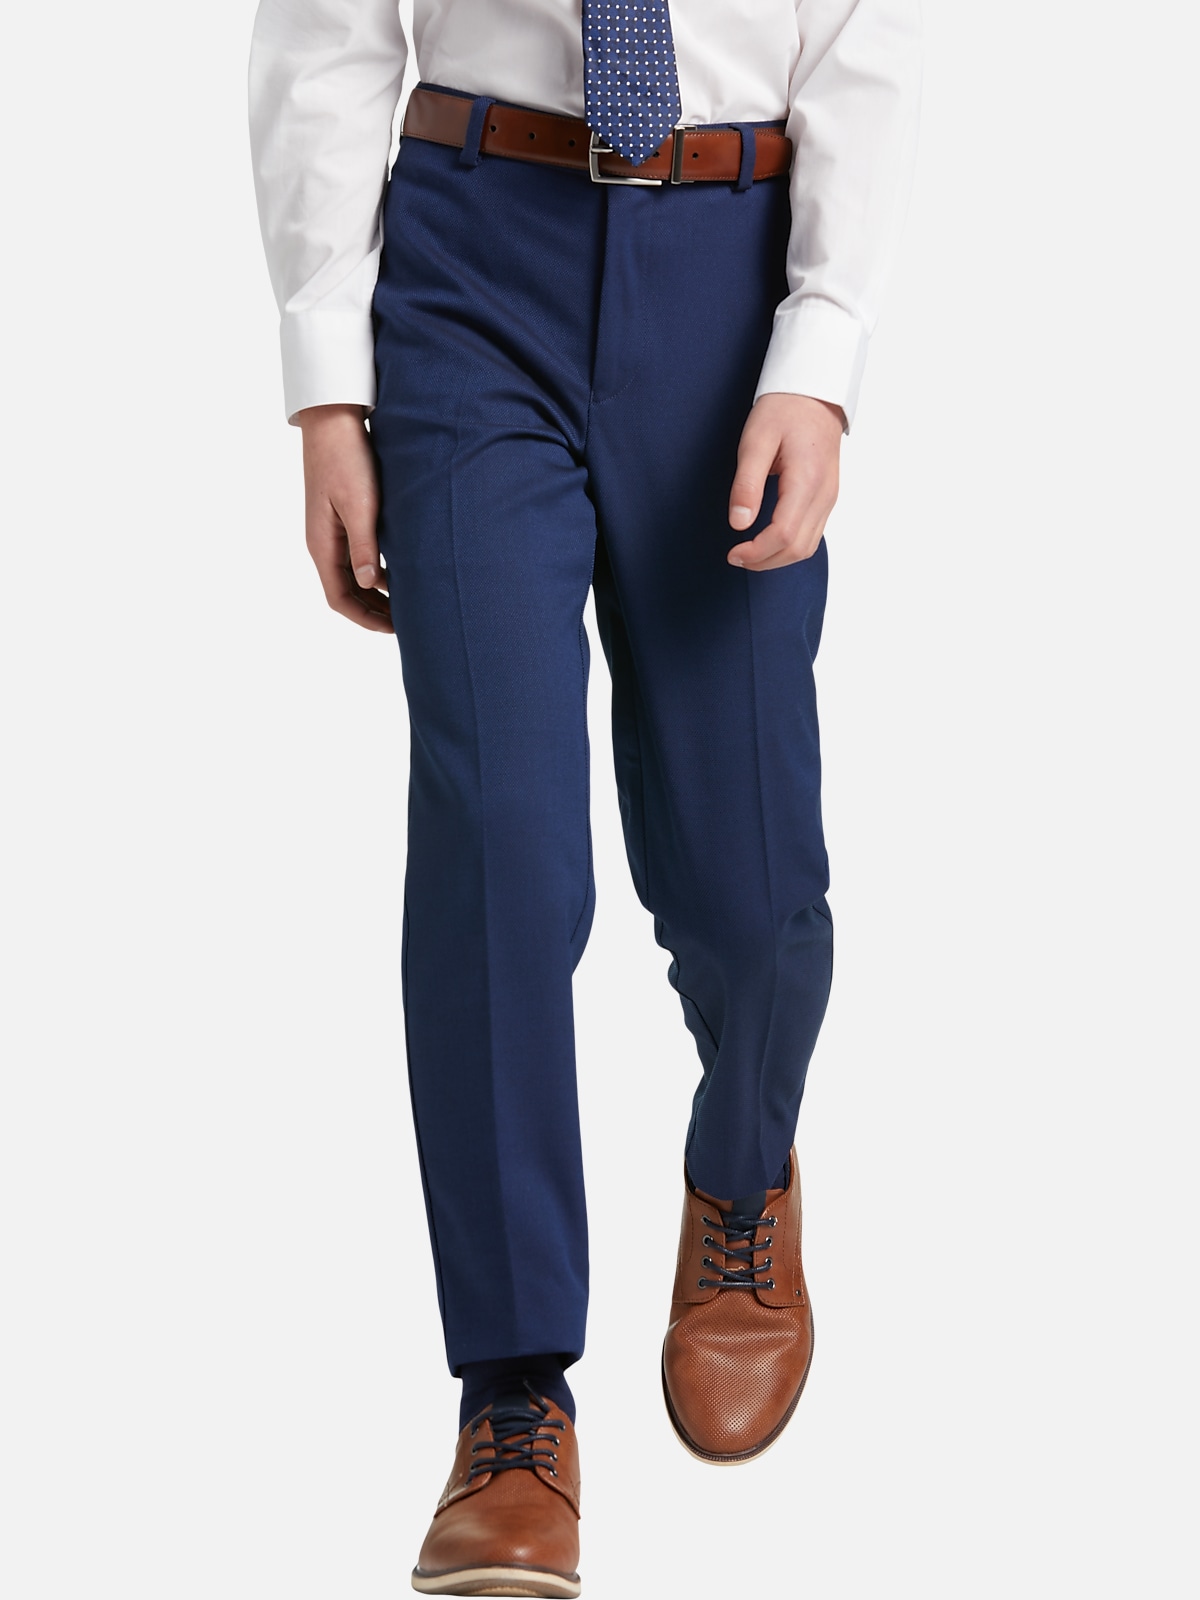 Michael Strahan Boys Suit Separates Pants | All Sale| Men's Wearhouse